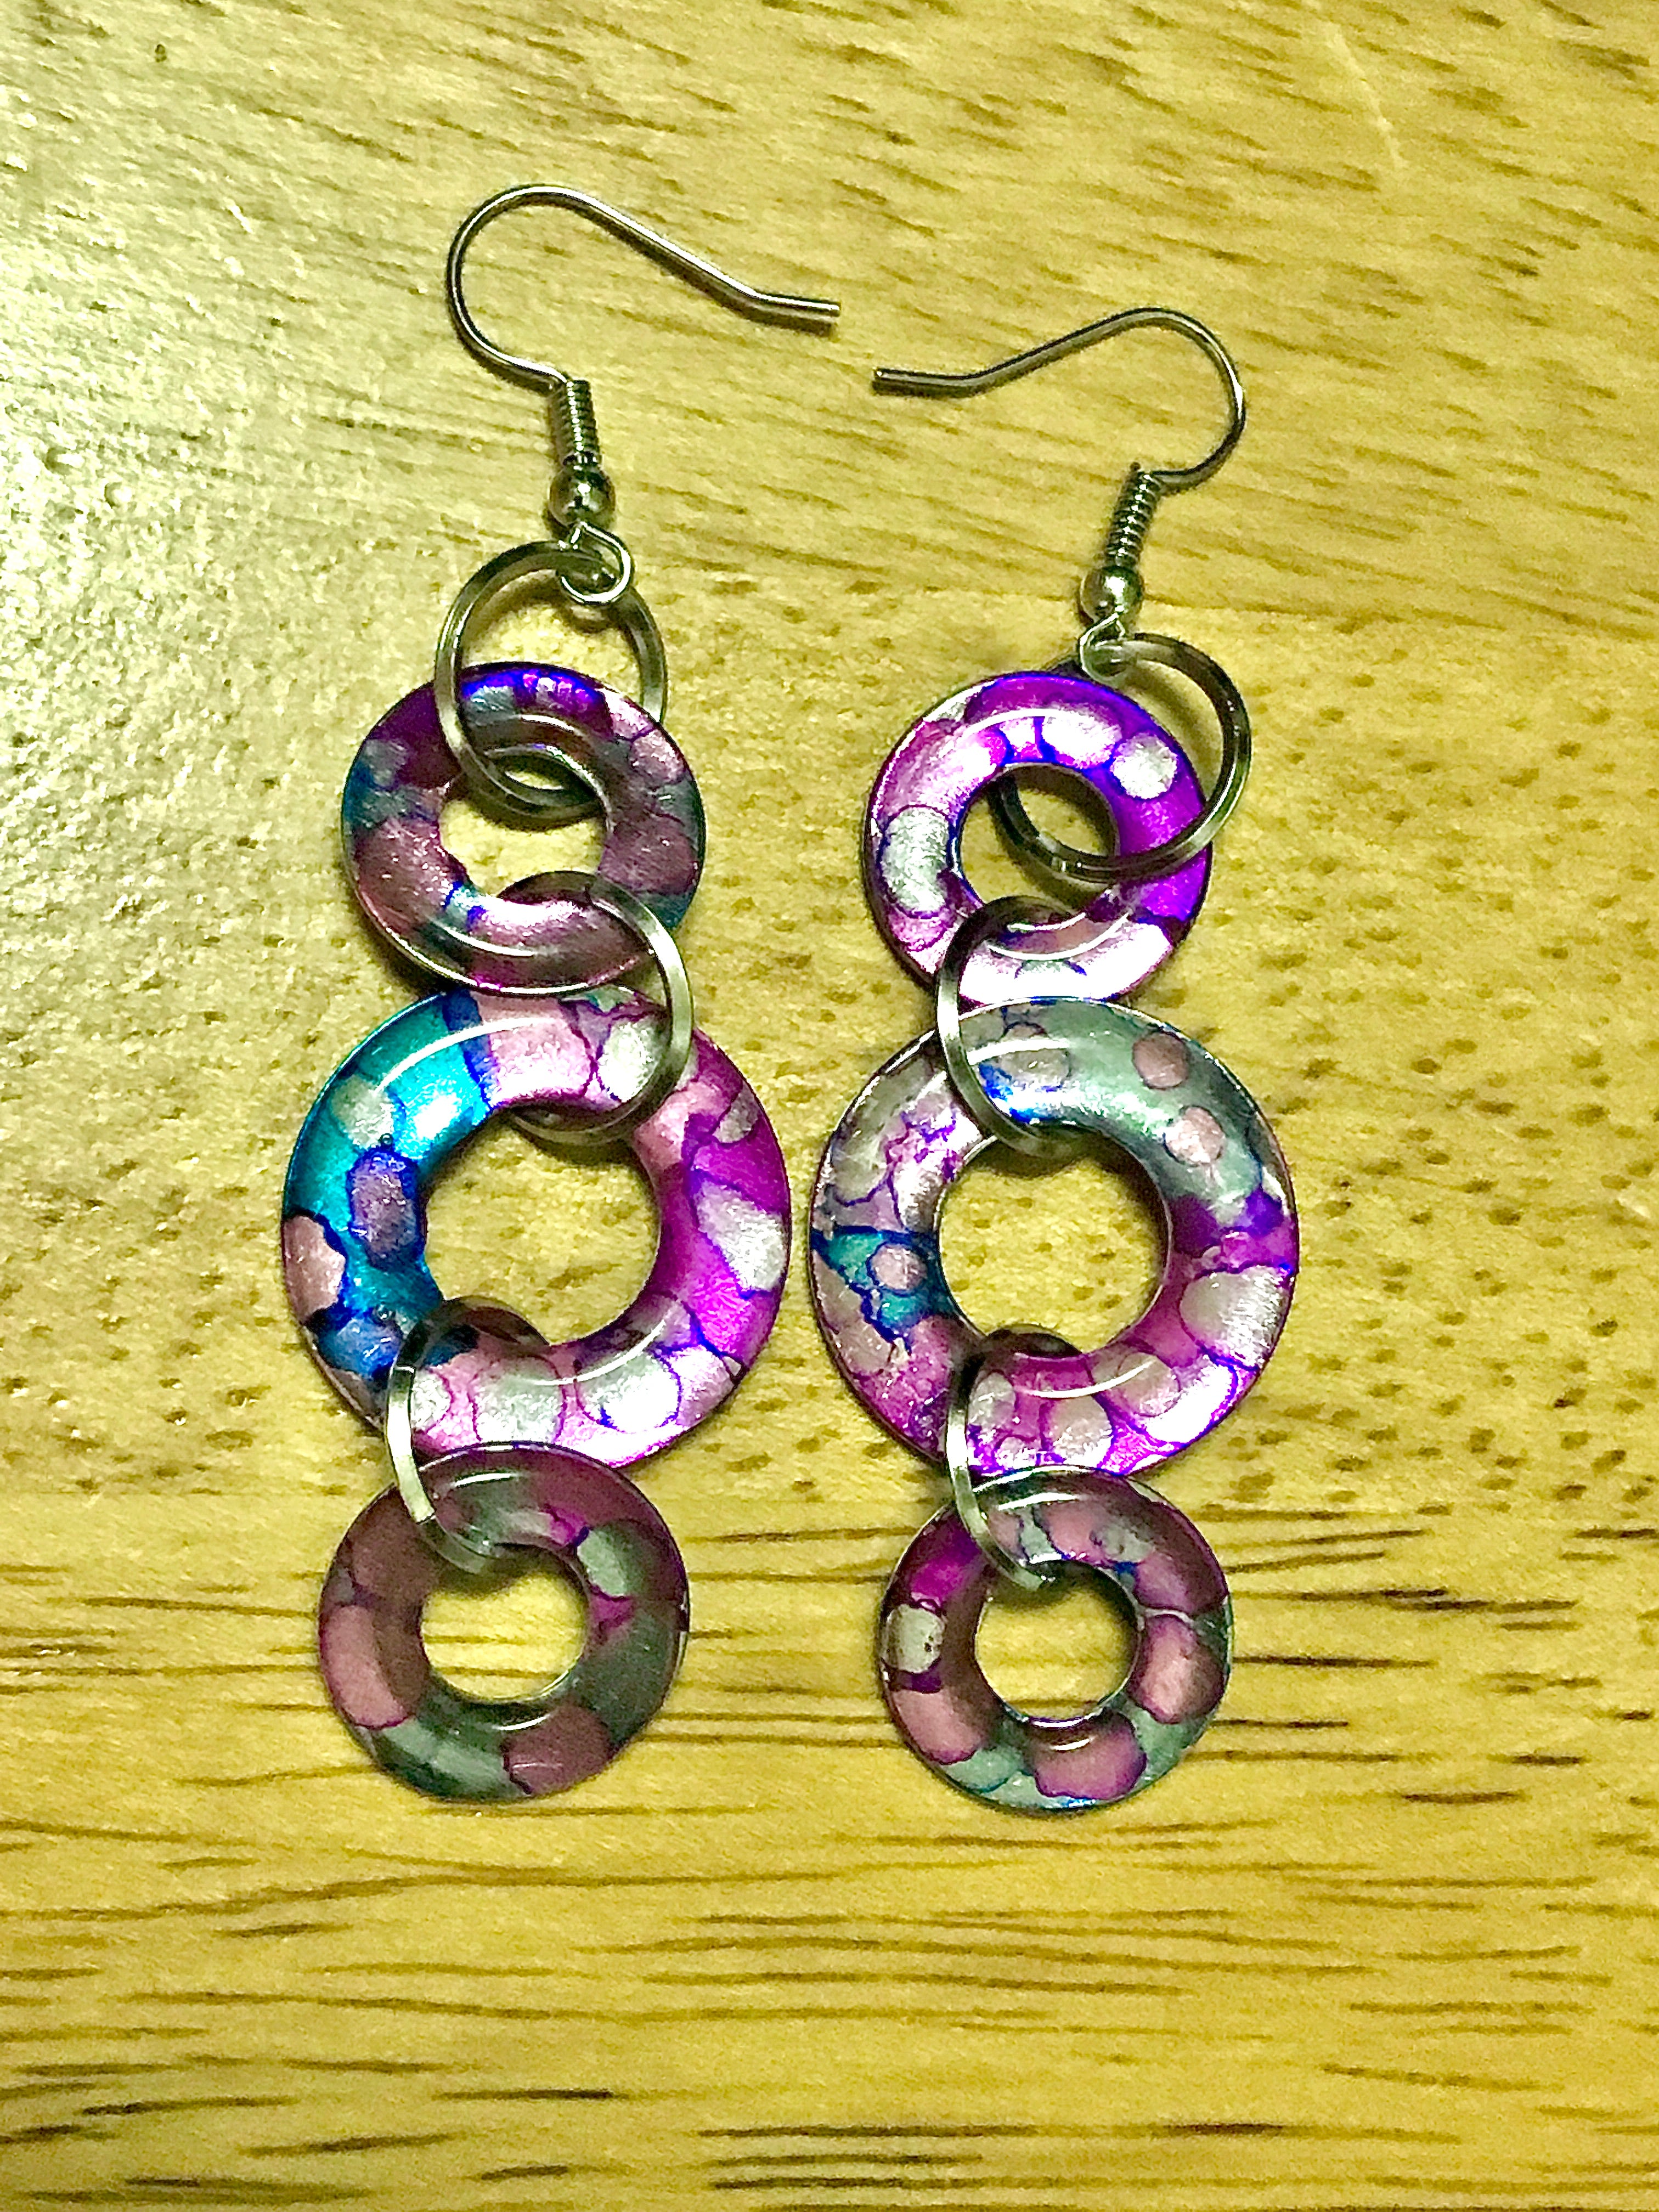 Dandy cotton candy earrings